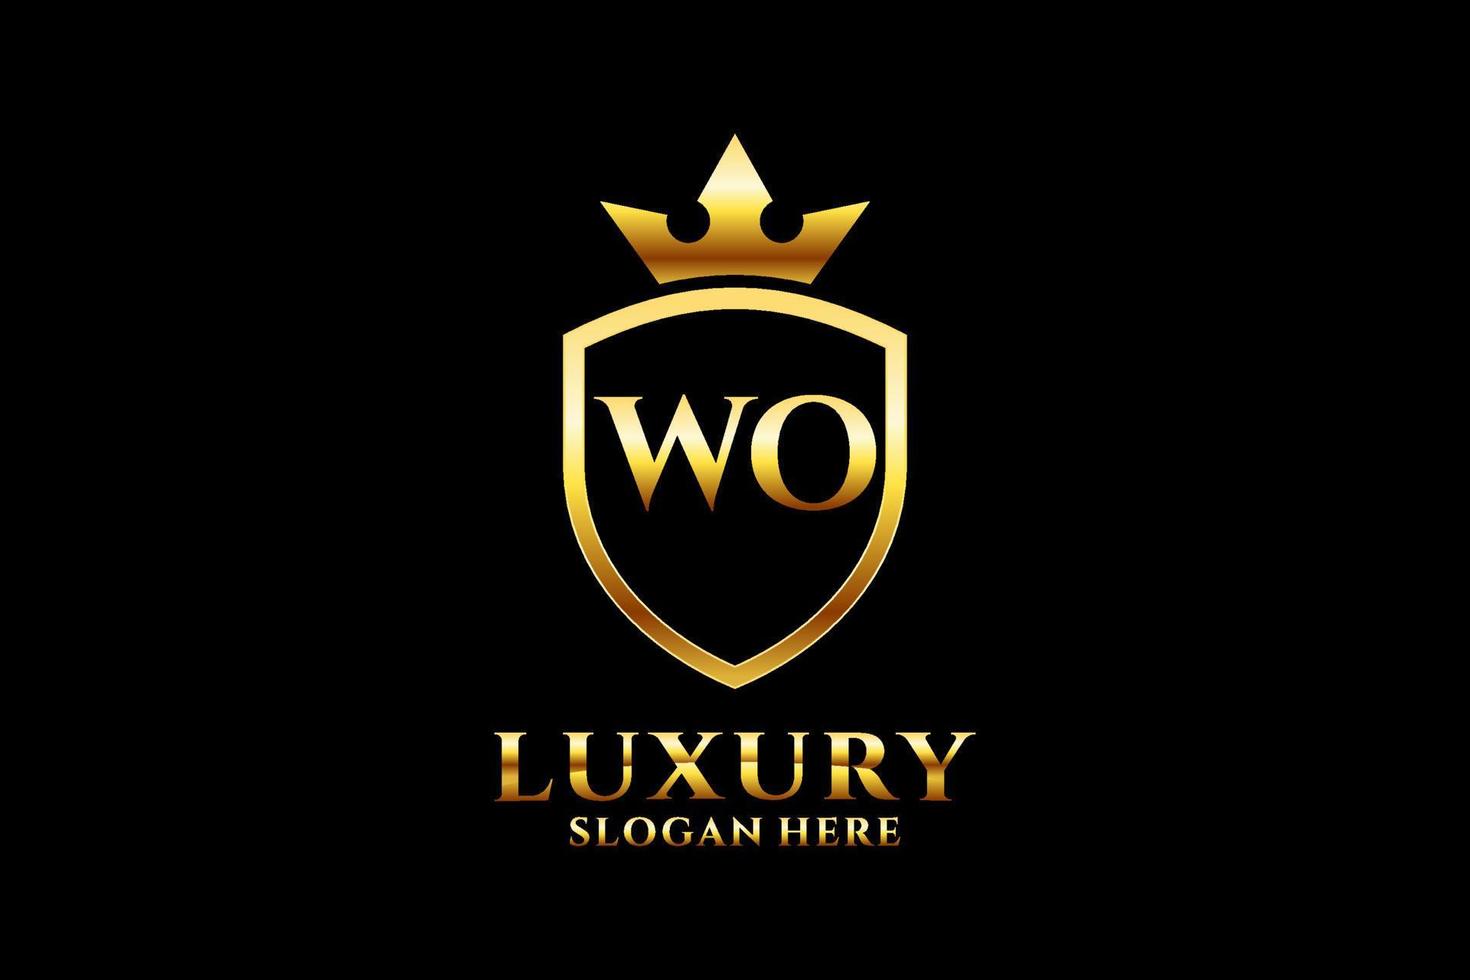 logotipo de monograma de lujo inicial wo elegante o plantilla de insignia con pergaminos y corona real - perfecto para proyectos de marca de lujo vector